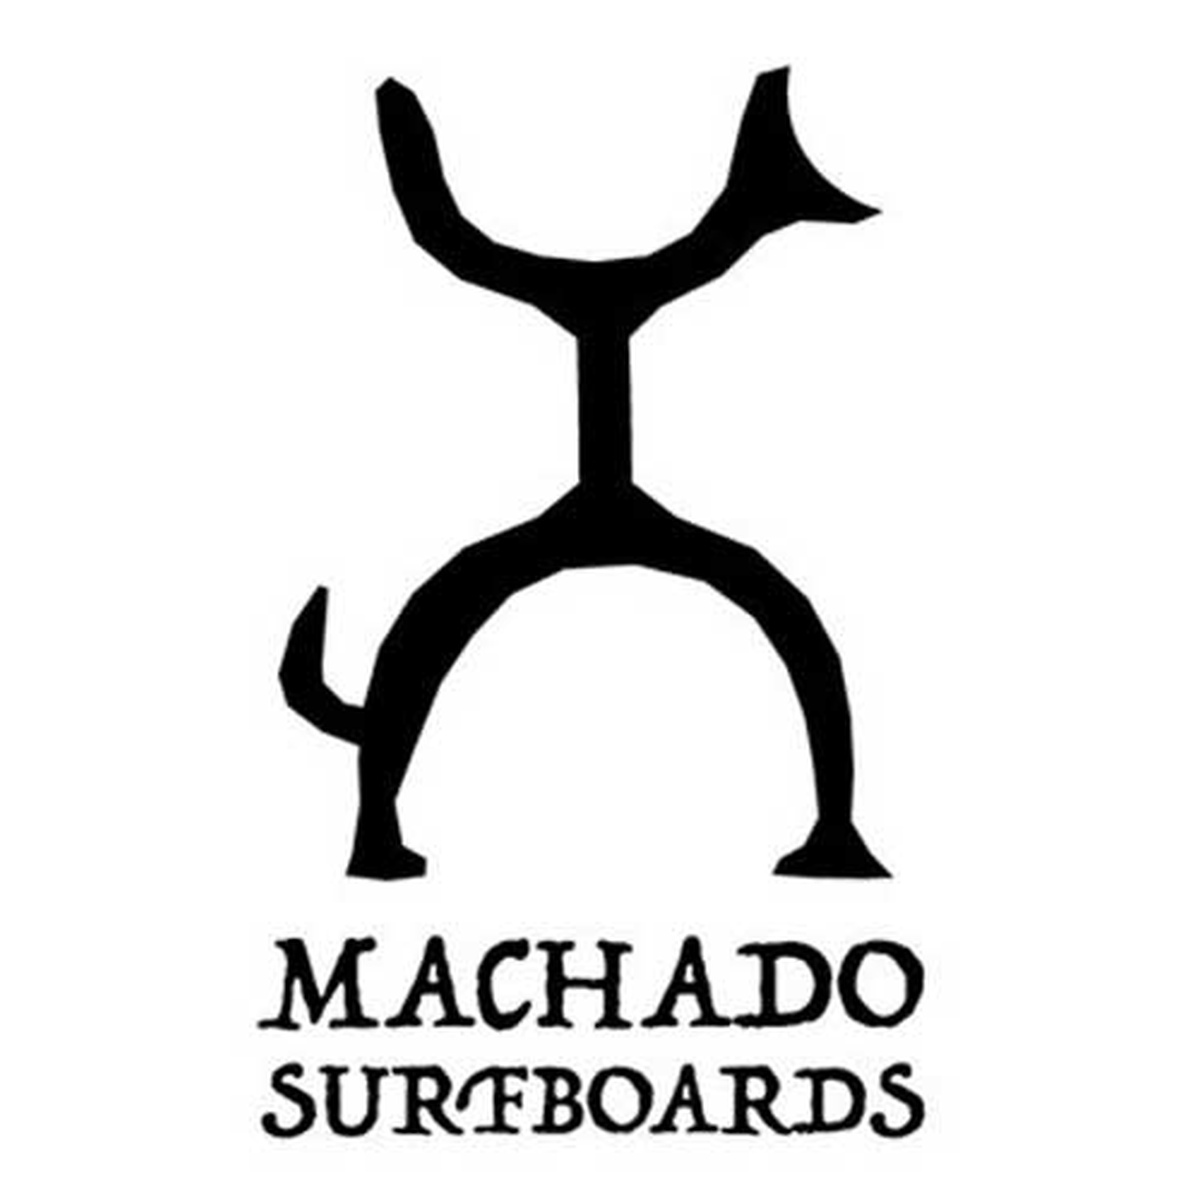 Machado surfboards